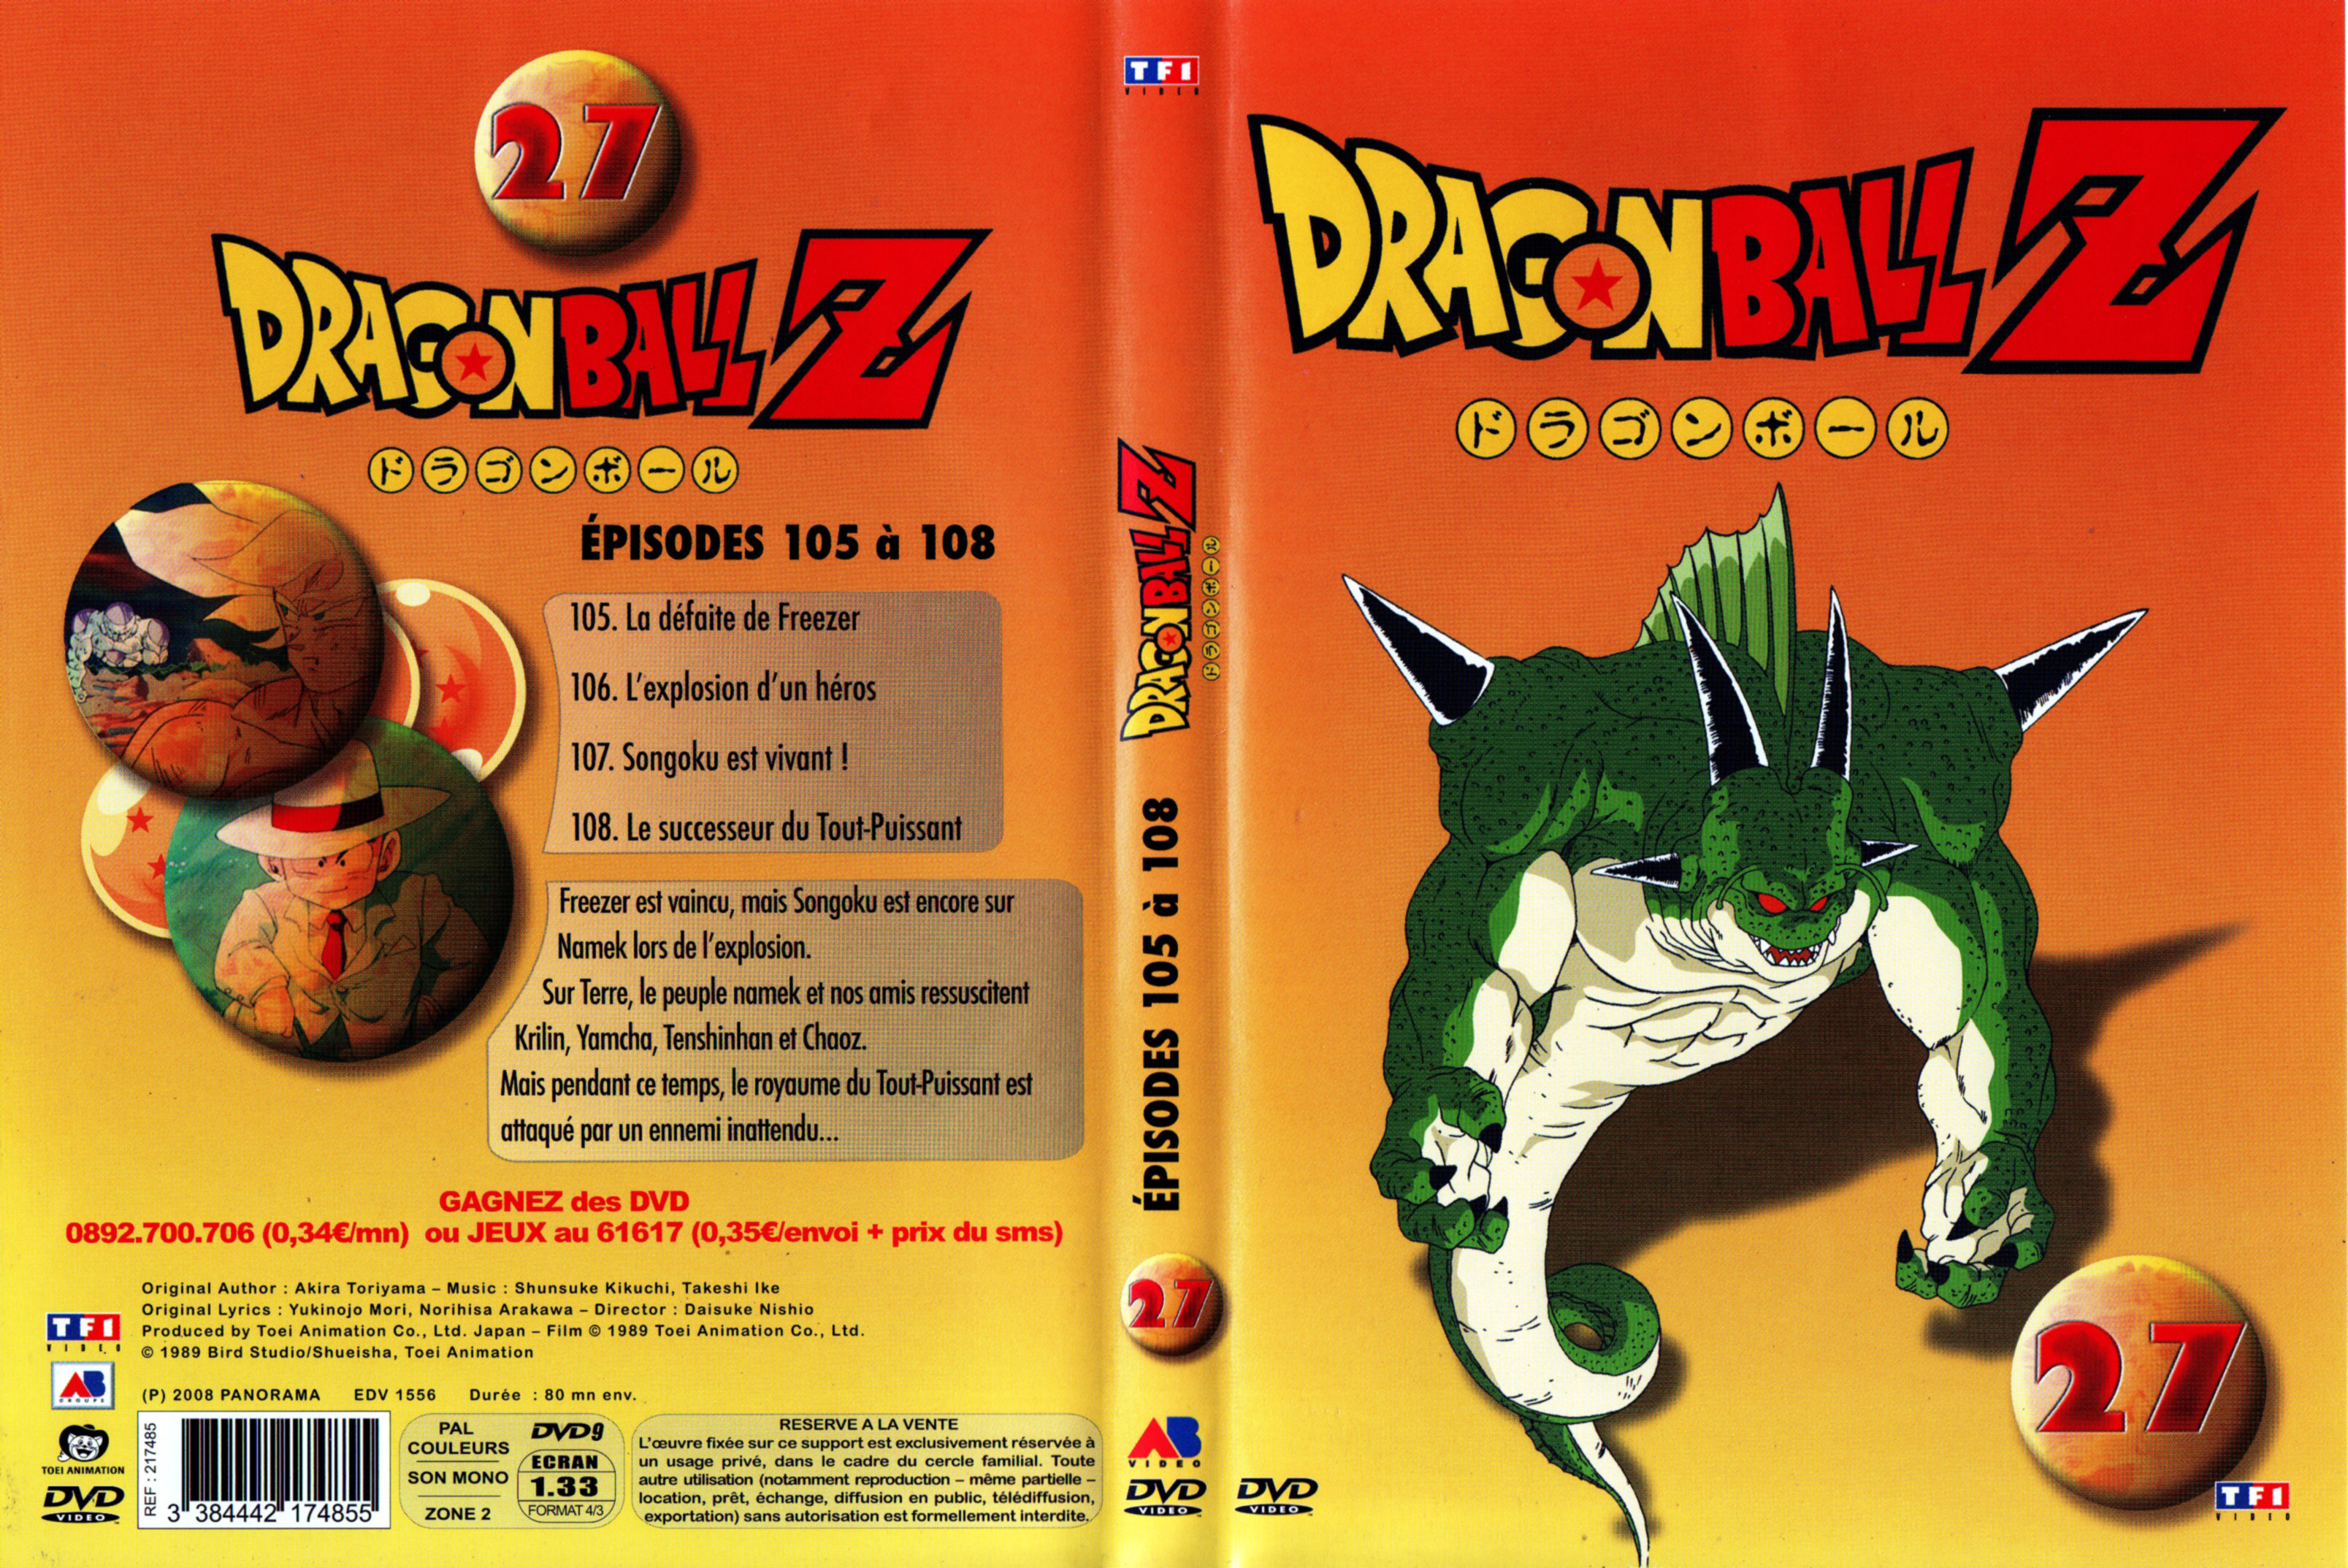 Jaquette DVD Dragon Ball Z vol 27 v2